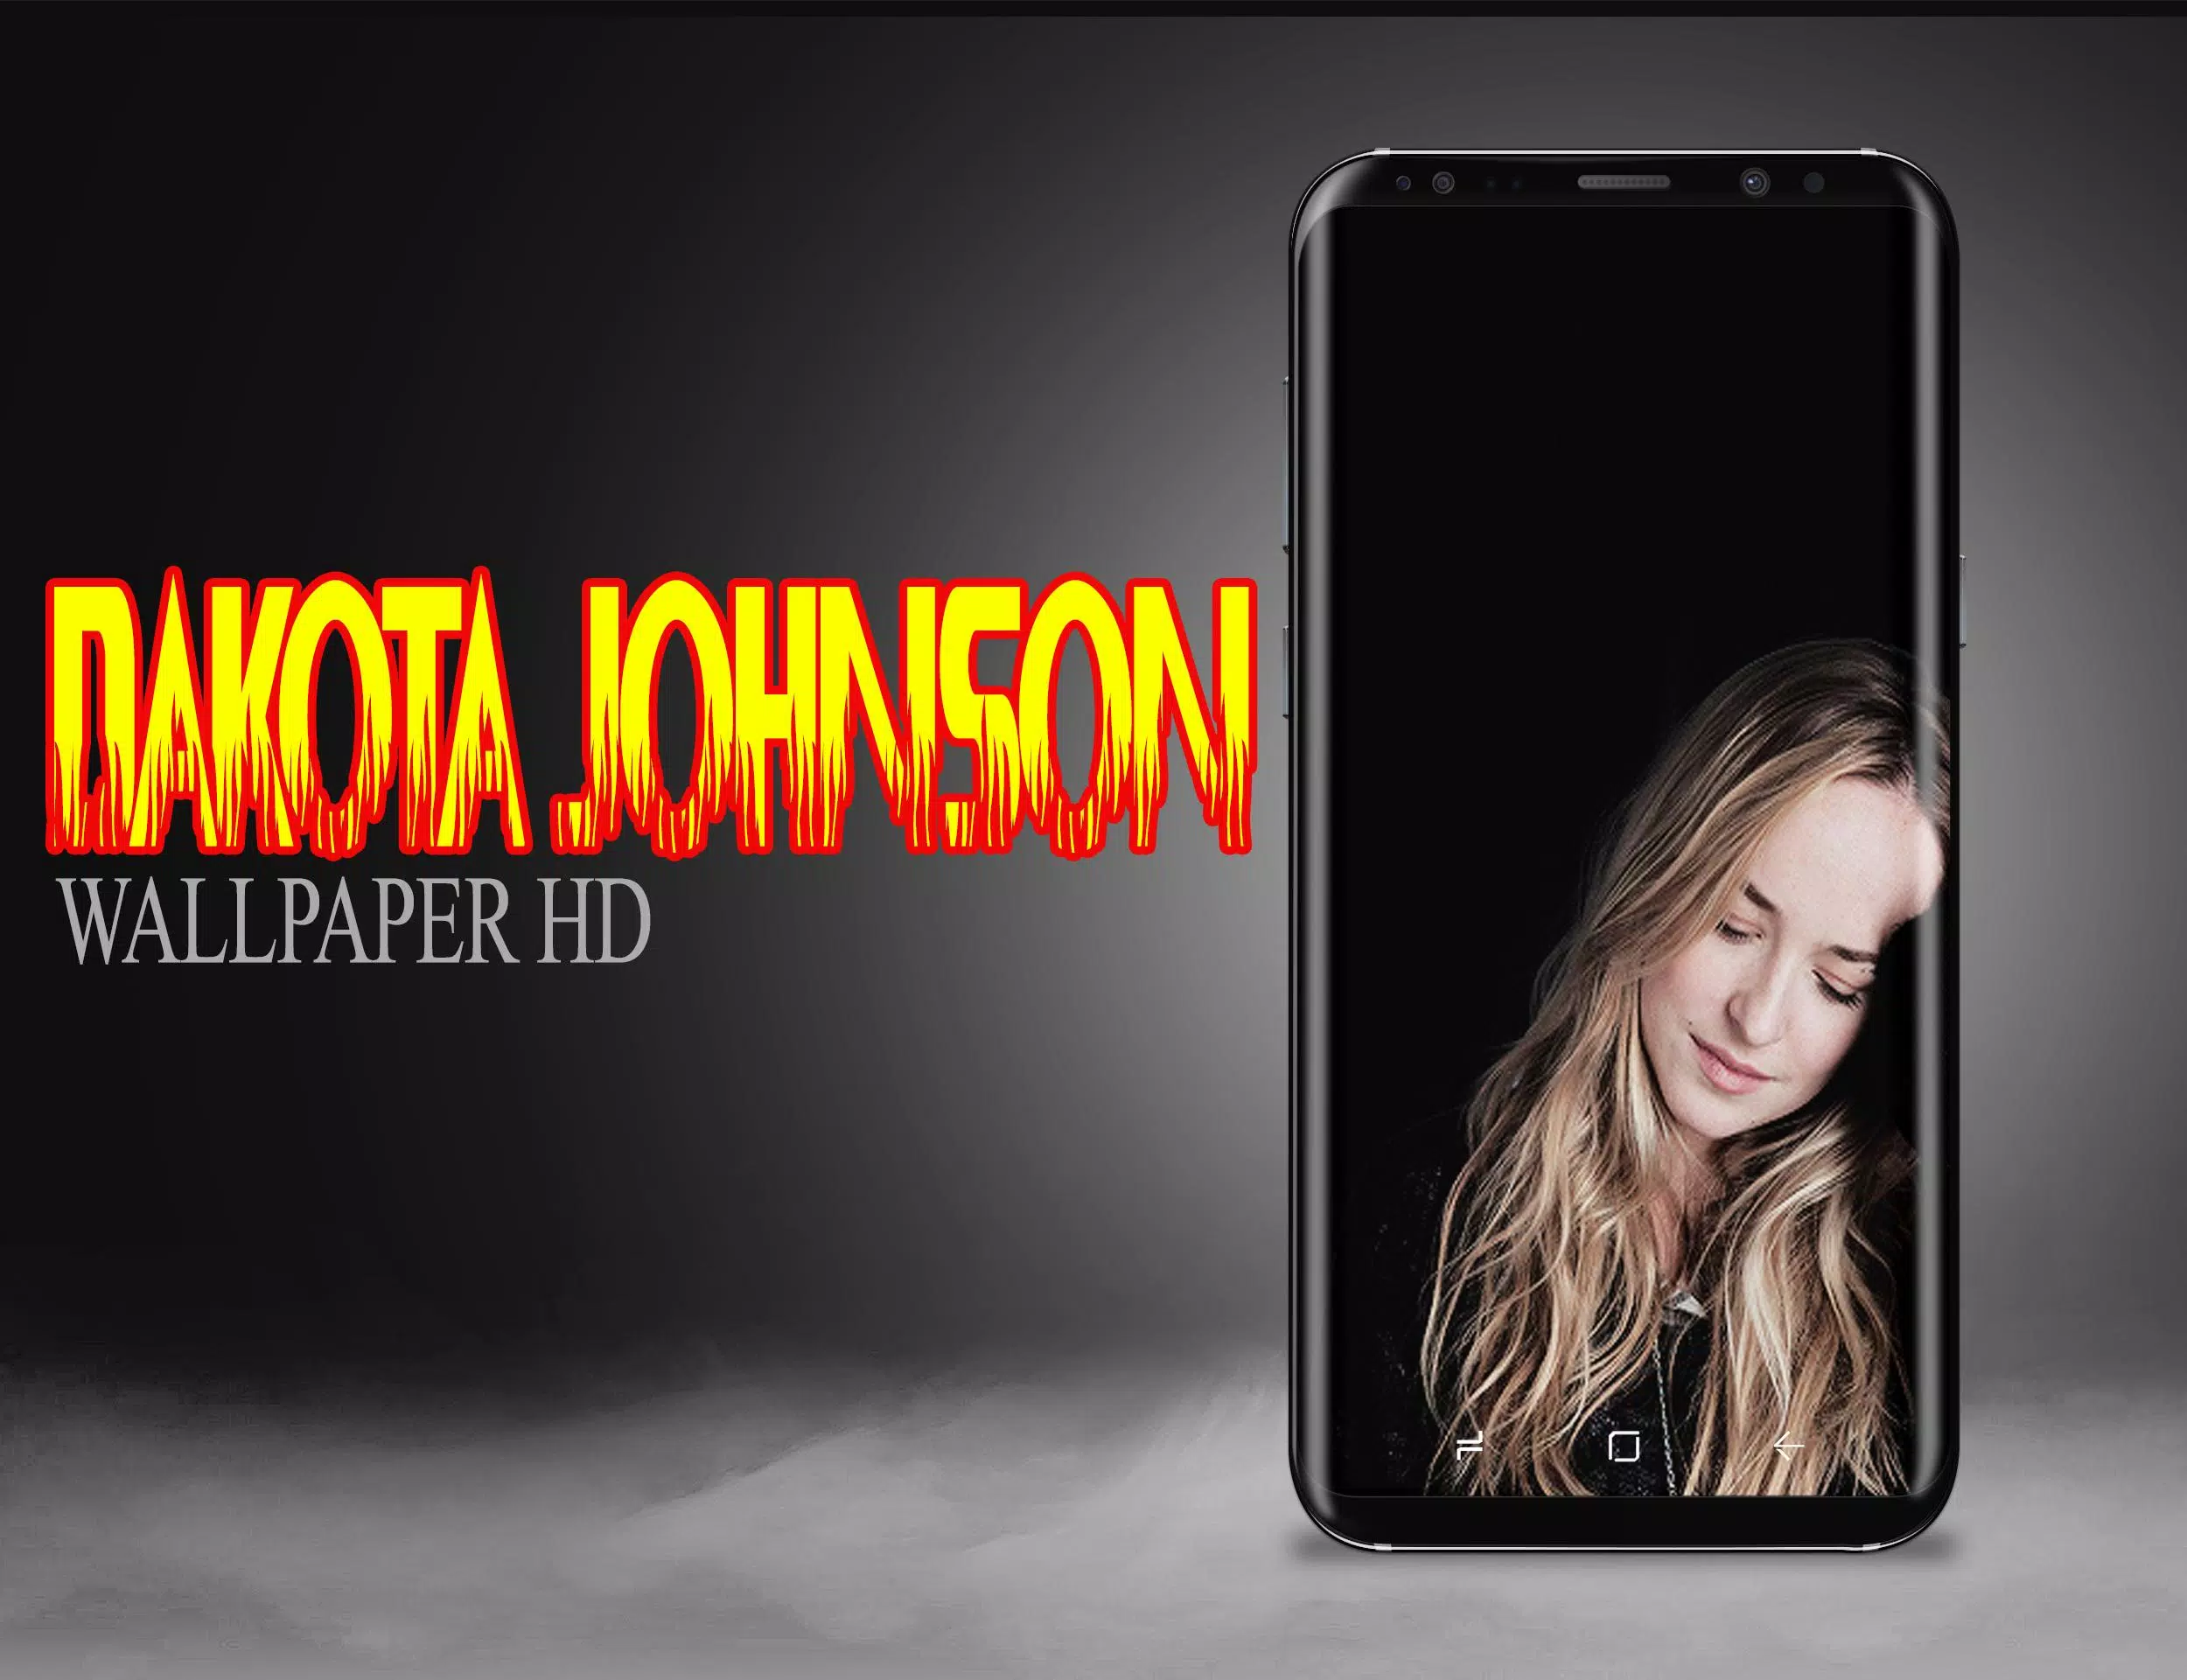 Dakota Johnson Wallpaper APK for Android Download